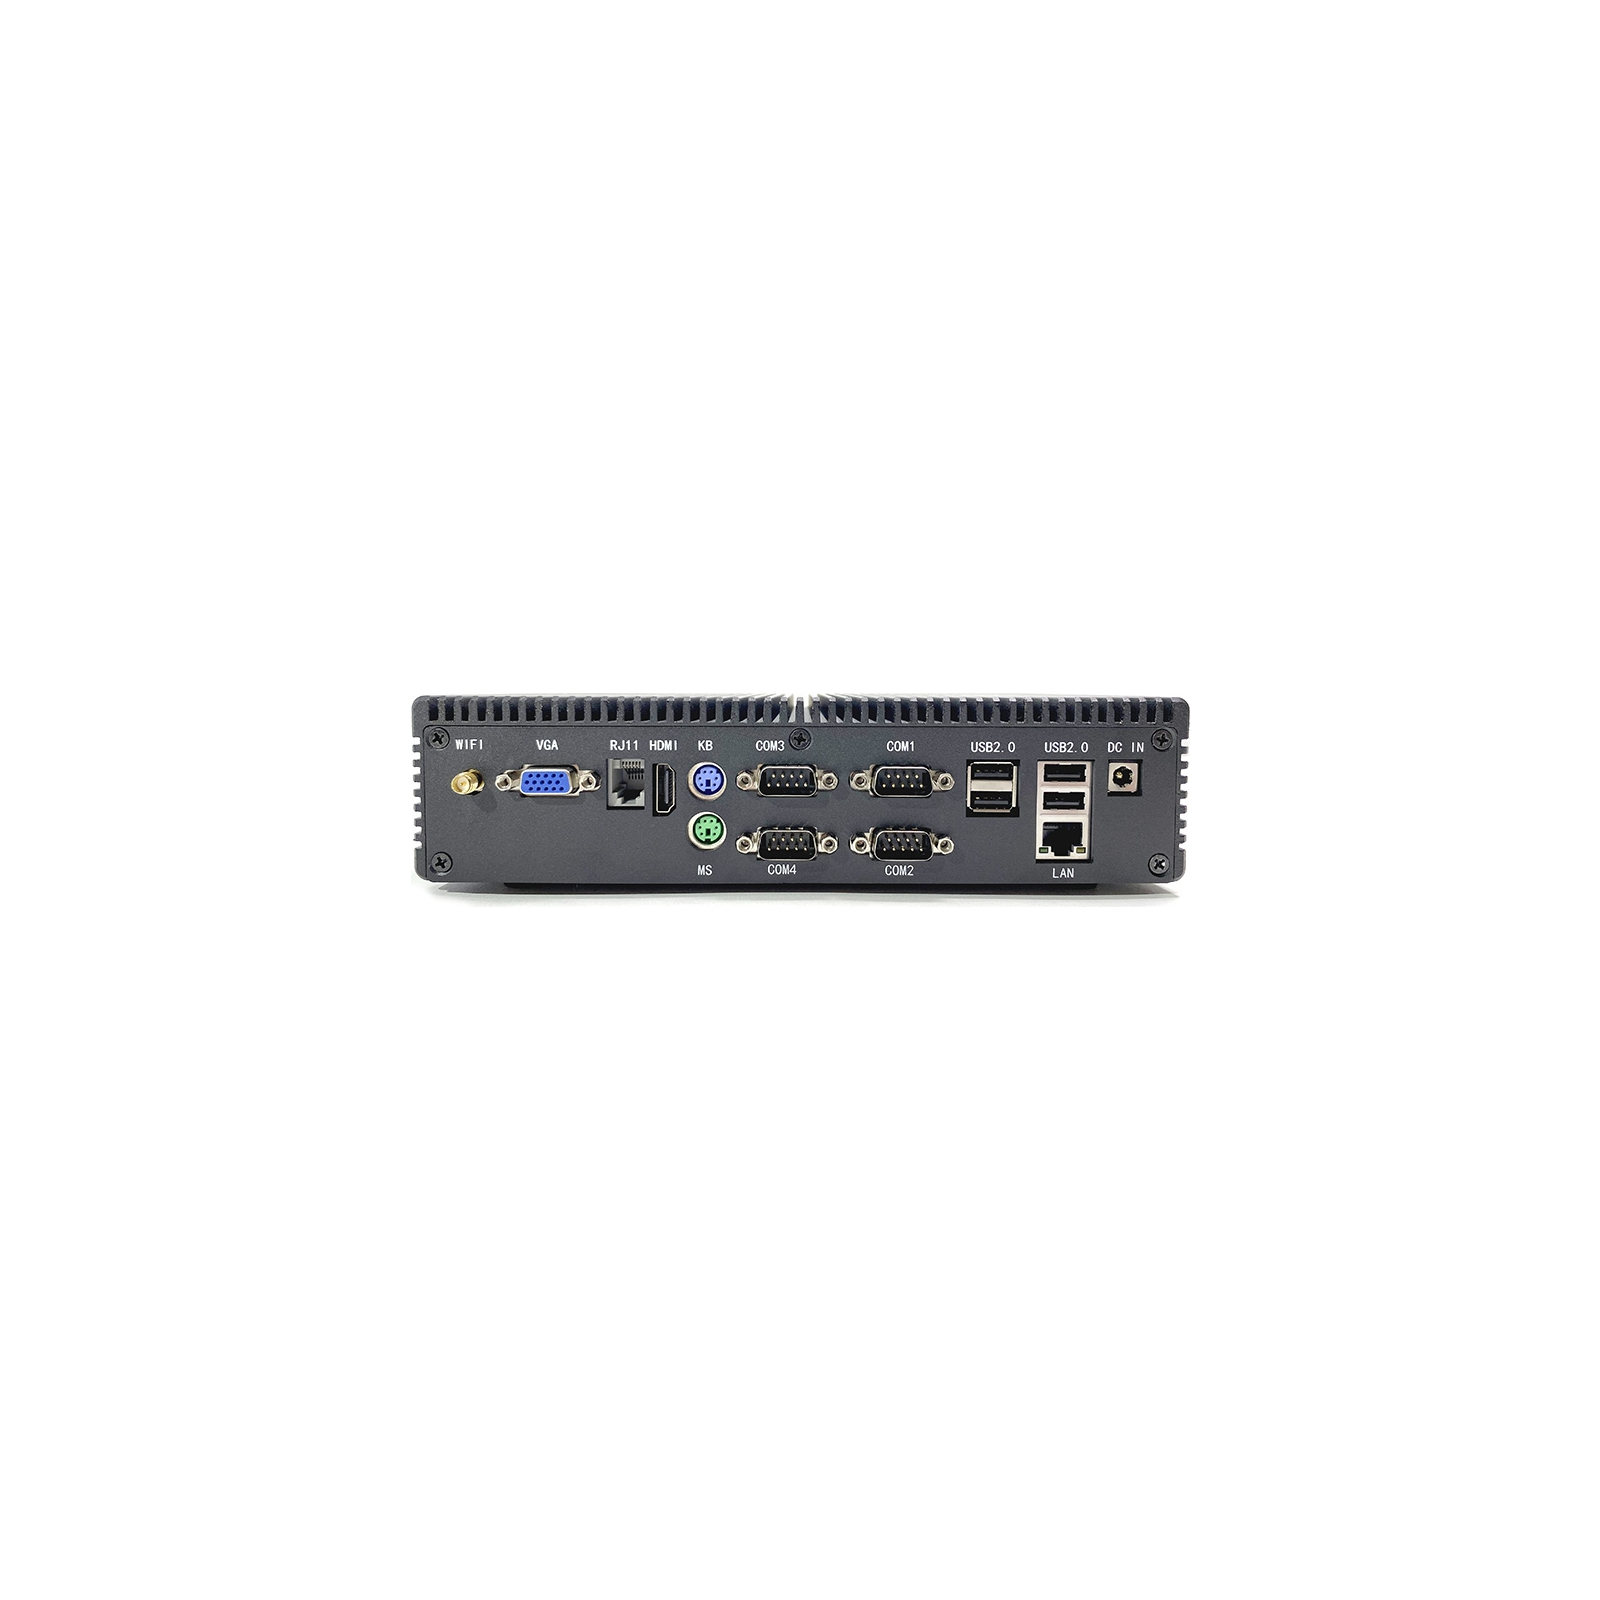 Промисловий ПК Geos BOX-2, J1900, 4Gb/128Gb/6xUSB/4xRS232/Ethernet (GEOS BOX-2 SSD 4 Gb, ОП 128Gb) зображення 2